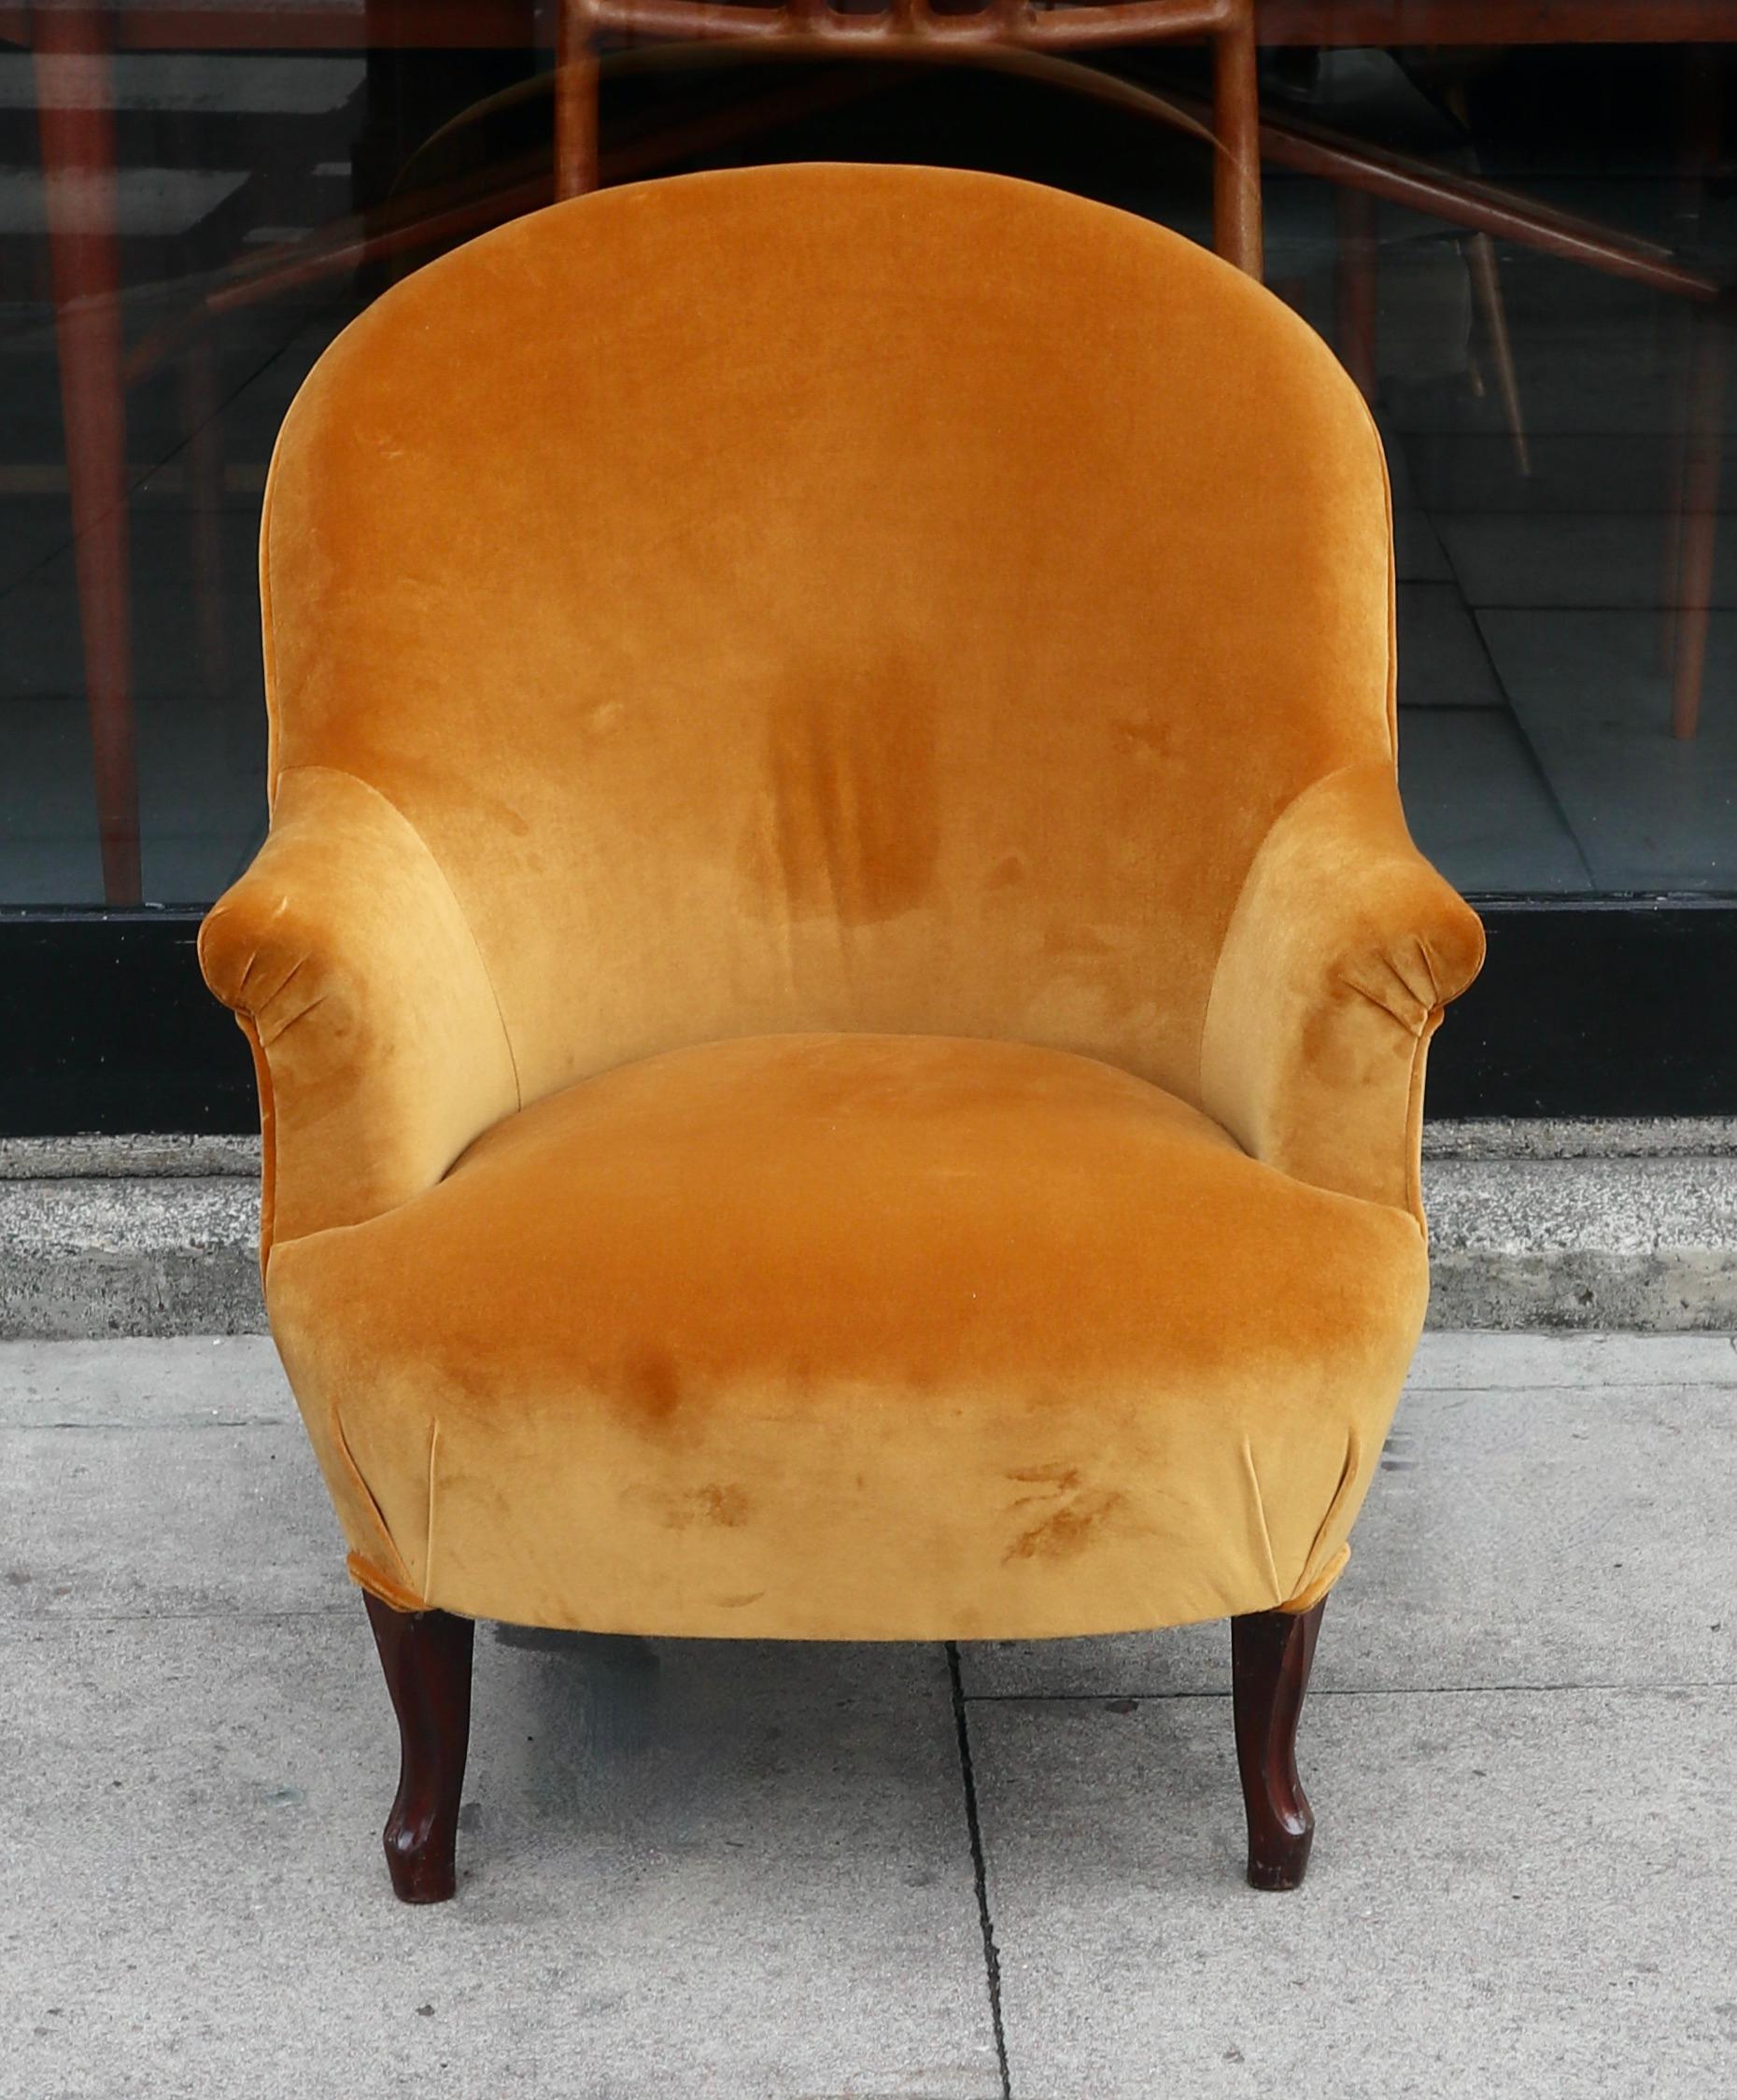 Un très beau, élégant et extrêmement confortable fauteuil crapaud Napoléon III d'origine française du XIXe siècle.  Recouvert d'un textile en velours 100% coton couleur sable sur des pieds en hêtre sculpté teinté. Ce canapé est en excellent état,